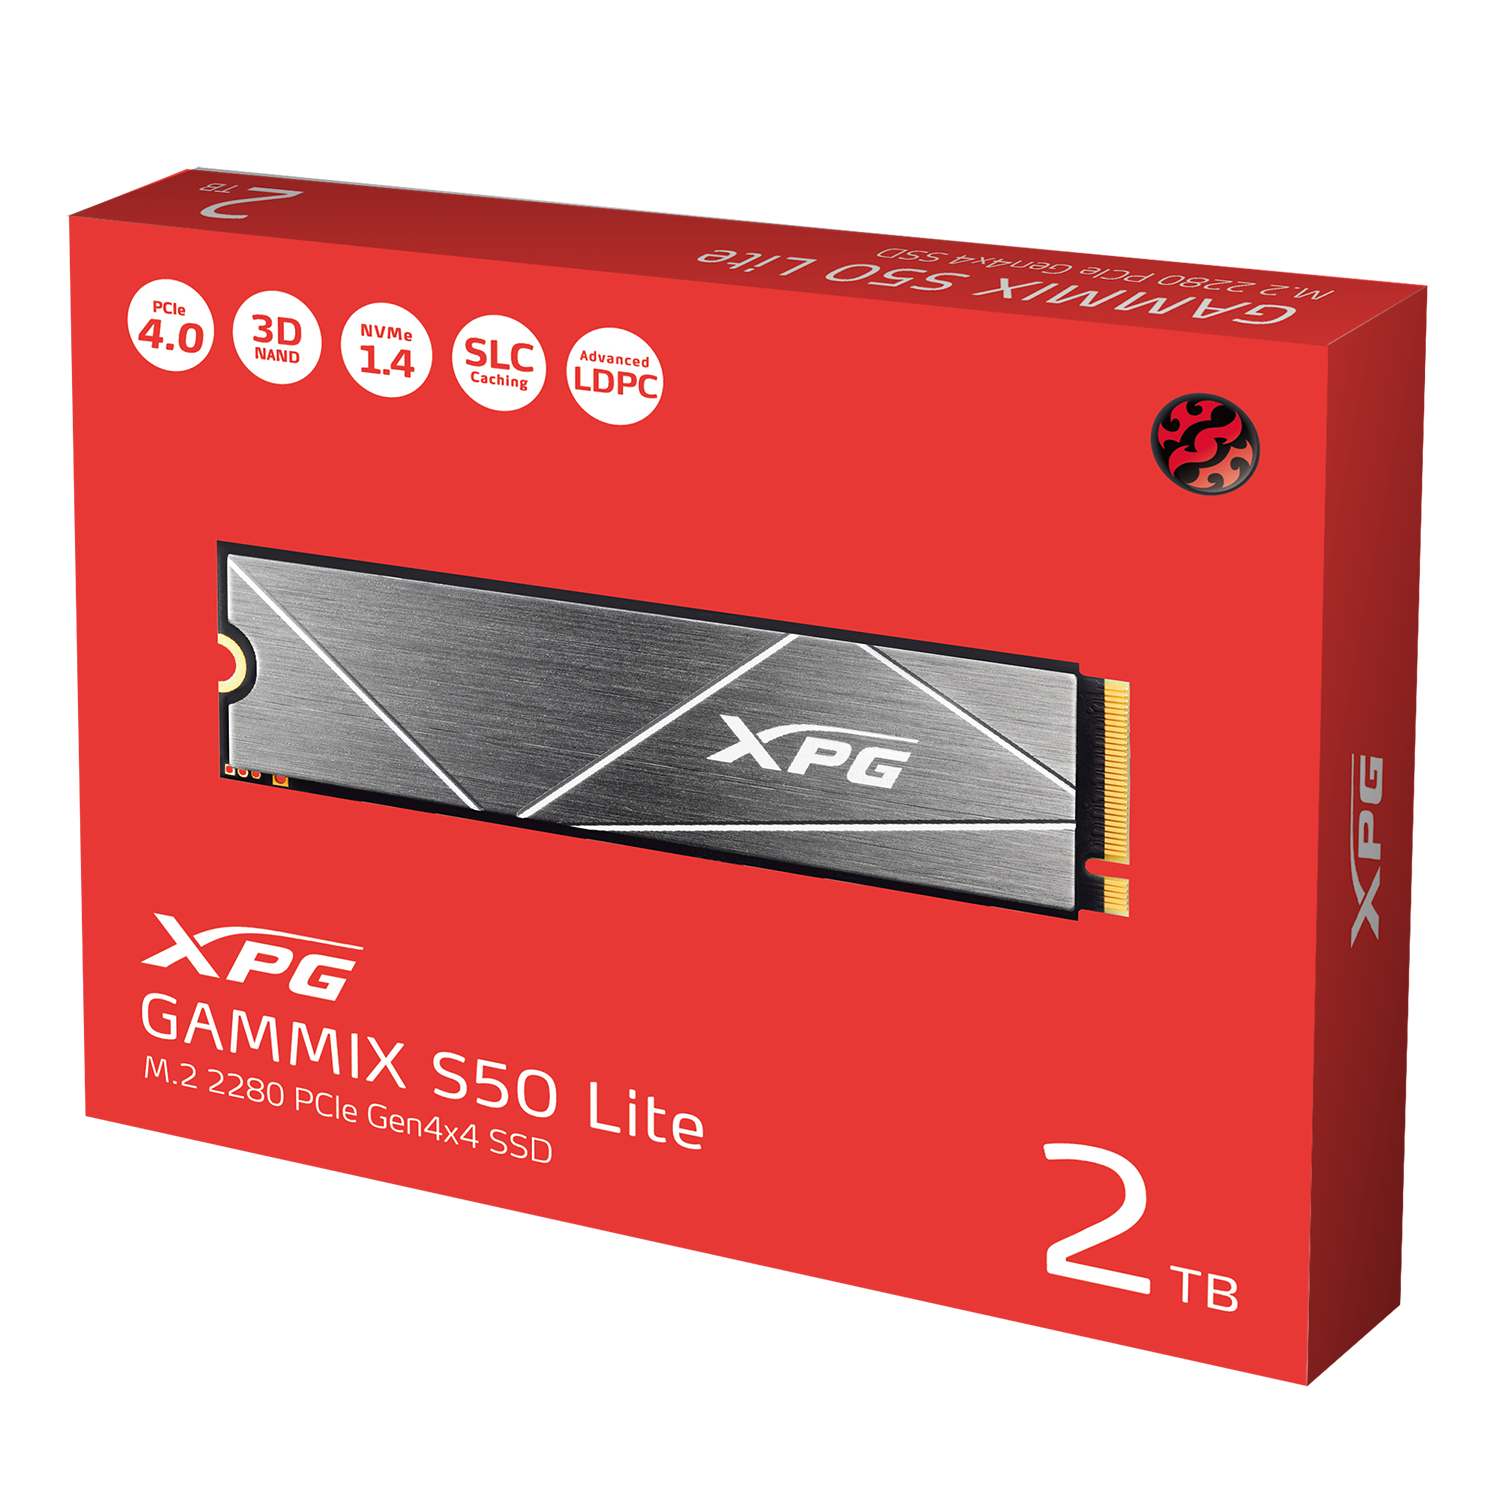 XPG GAMMIX S50 Lite PCIe Gen4x4 M.2 2280 Solid State Drive